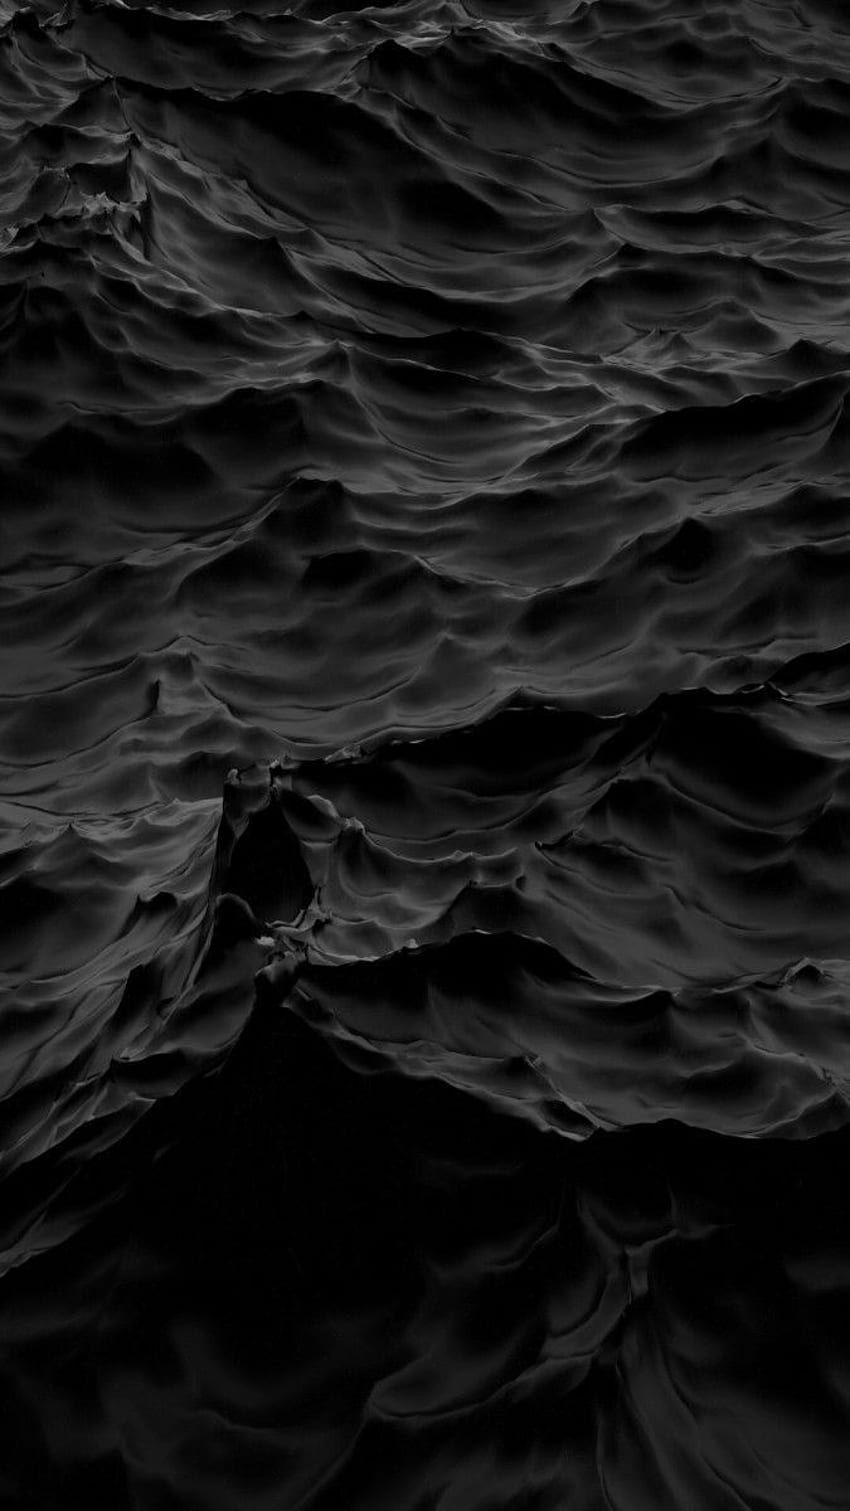 Lautan gelap. W A L L PA P E R. Dark , Black wallpaper ponsel HD